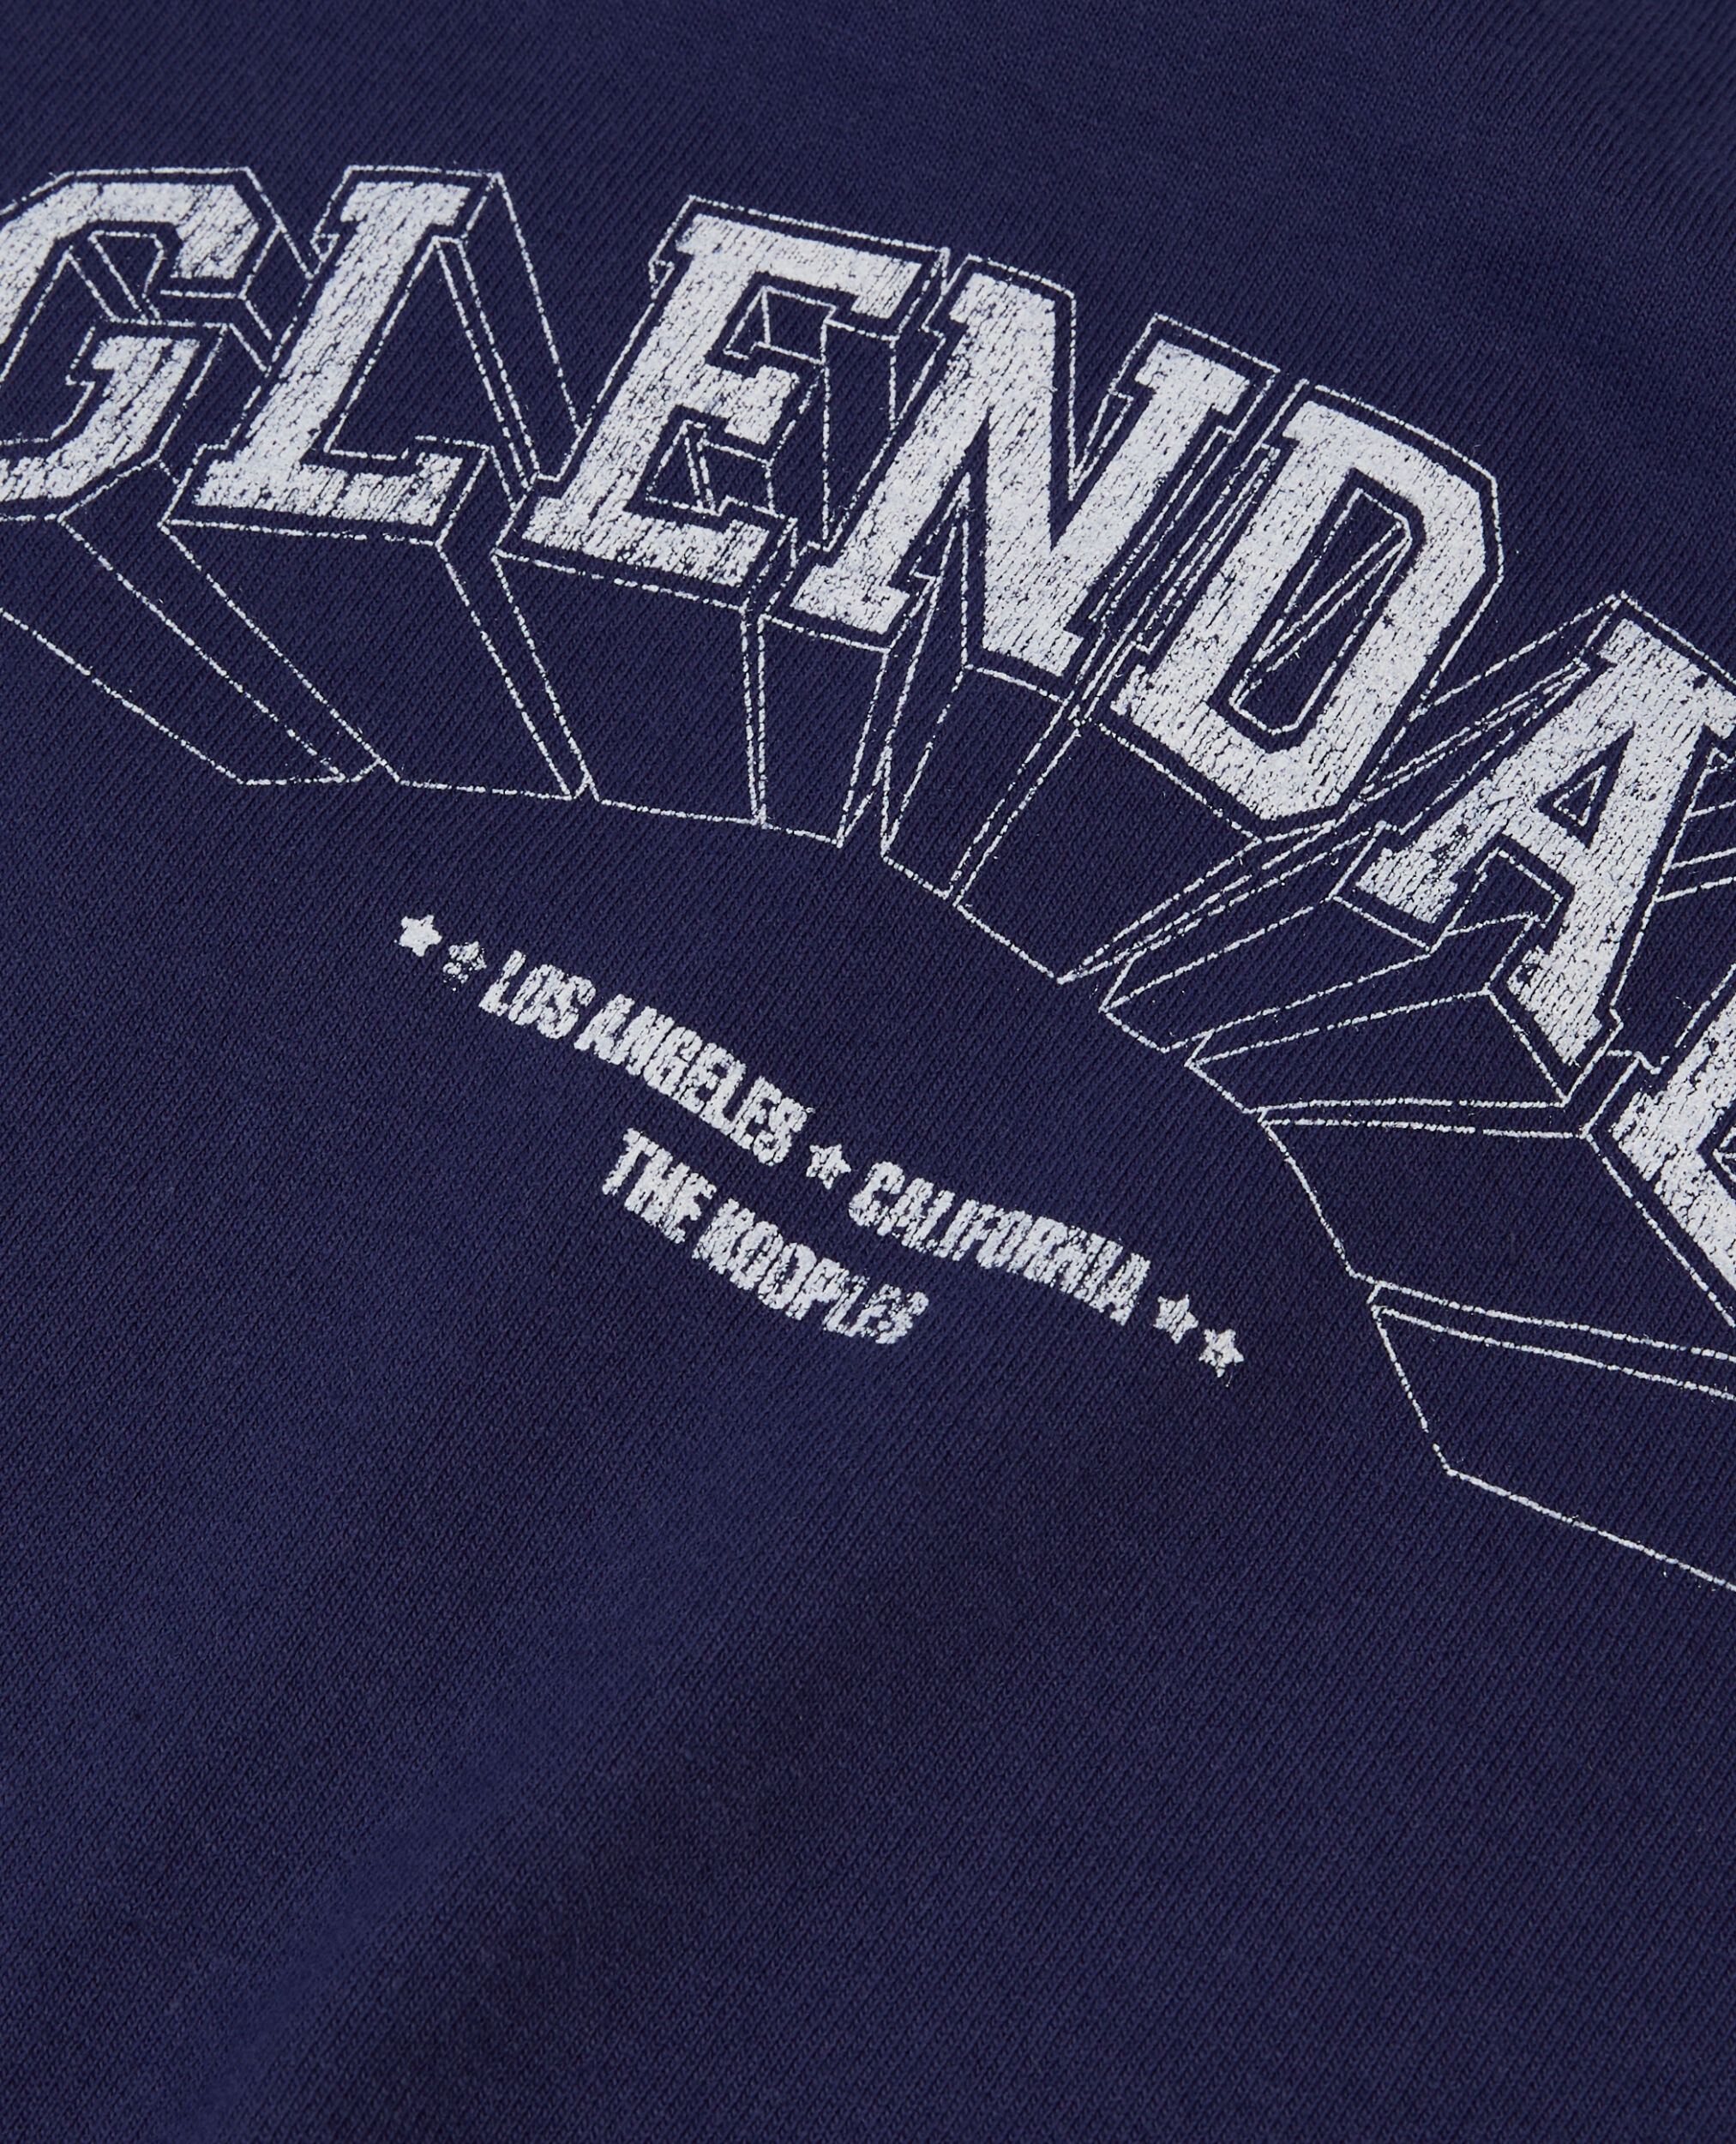 Camiseta azul marino serigrafía Glendale, WASHED NAVY, hi-res image number null